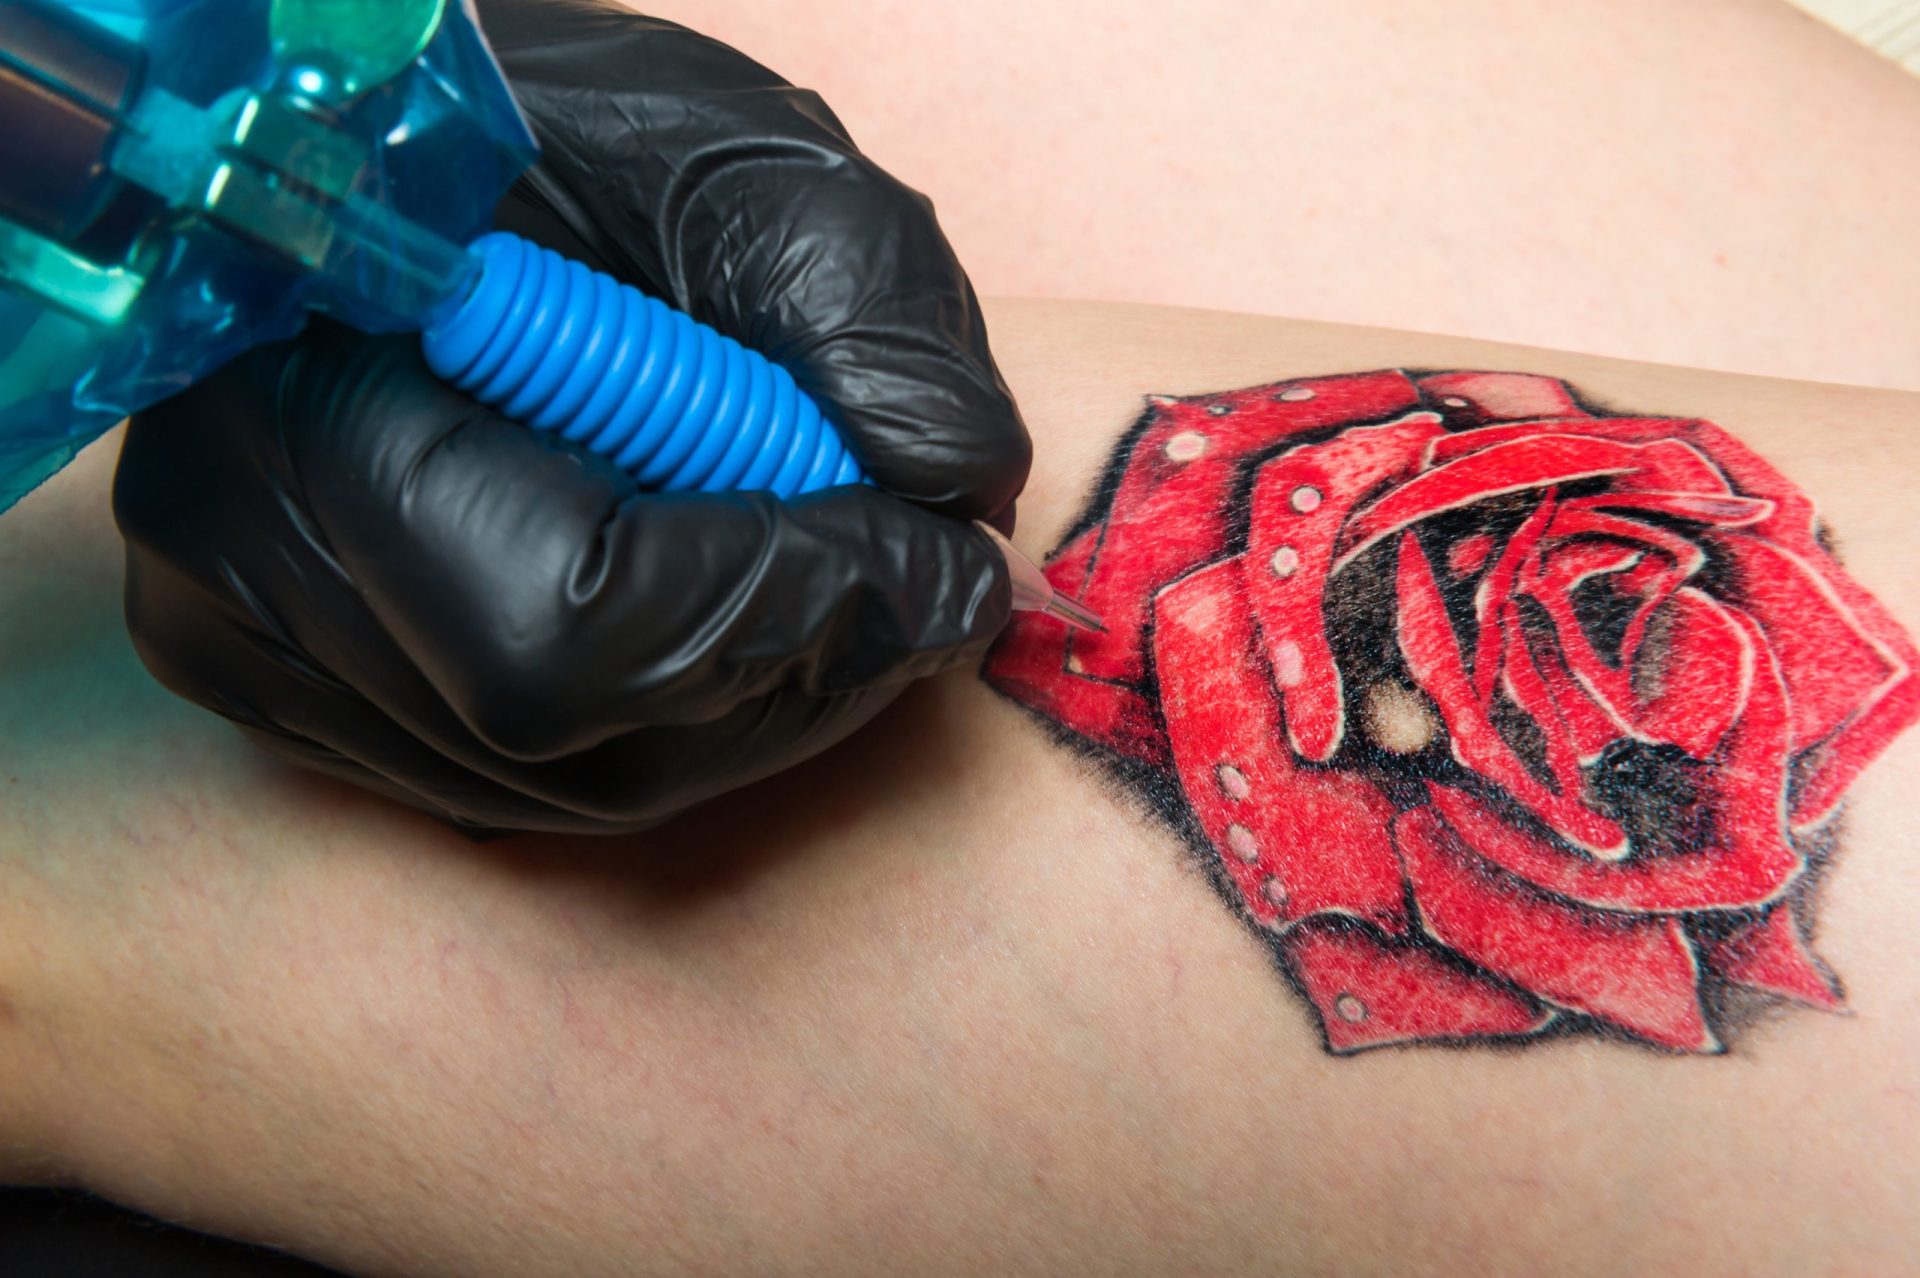 Novas regras na UE acerca de tintas para tatuagens. “Não se pode brincar com a saúde pública”